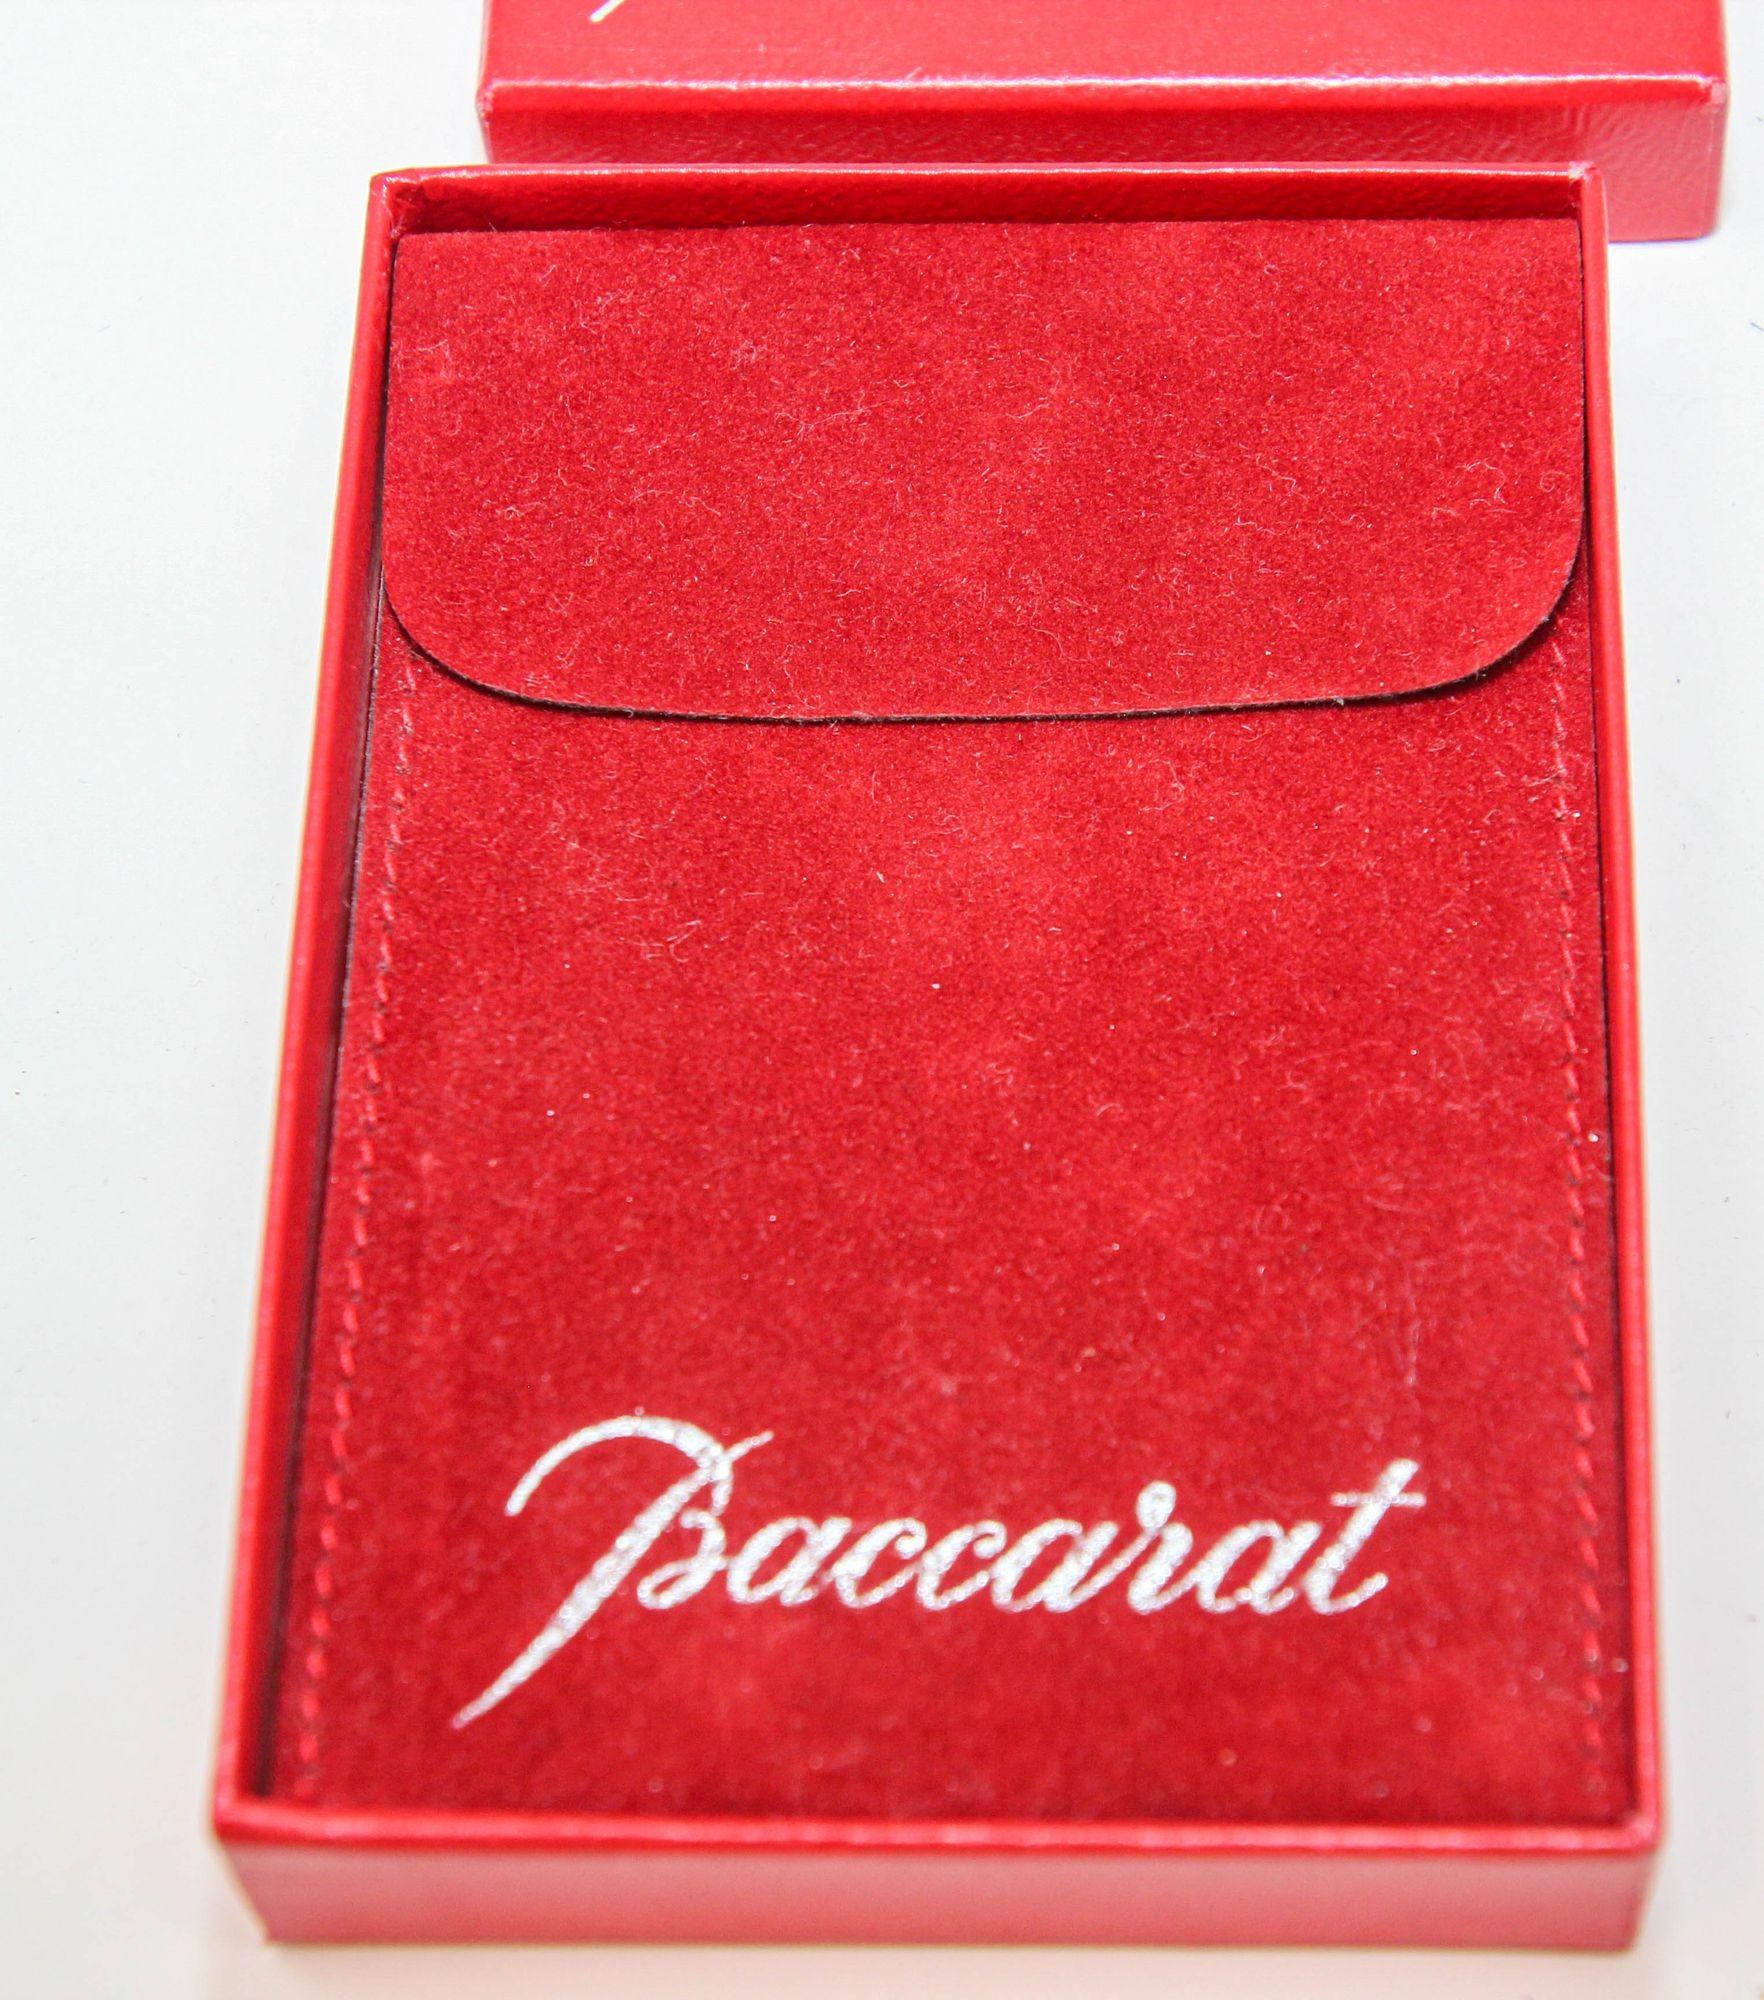 Vintage Collectible Baccarat Crystal Noel 1984 Ornament Signed Baccarat Crystal Ornament 1984, with Box.
Arbre de Noël vintage en cristal dans sa boîte d'origine. Un objet de collection de l'année 1984, fabriqué en France.
Fabriqué à la main en